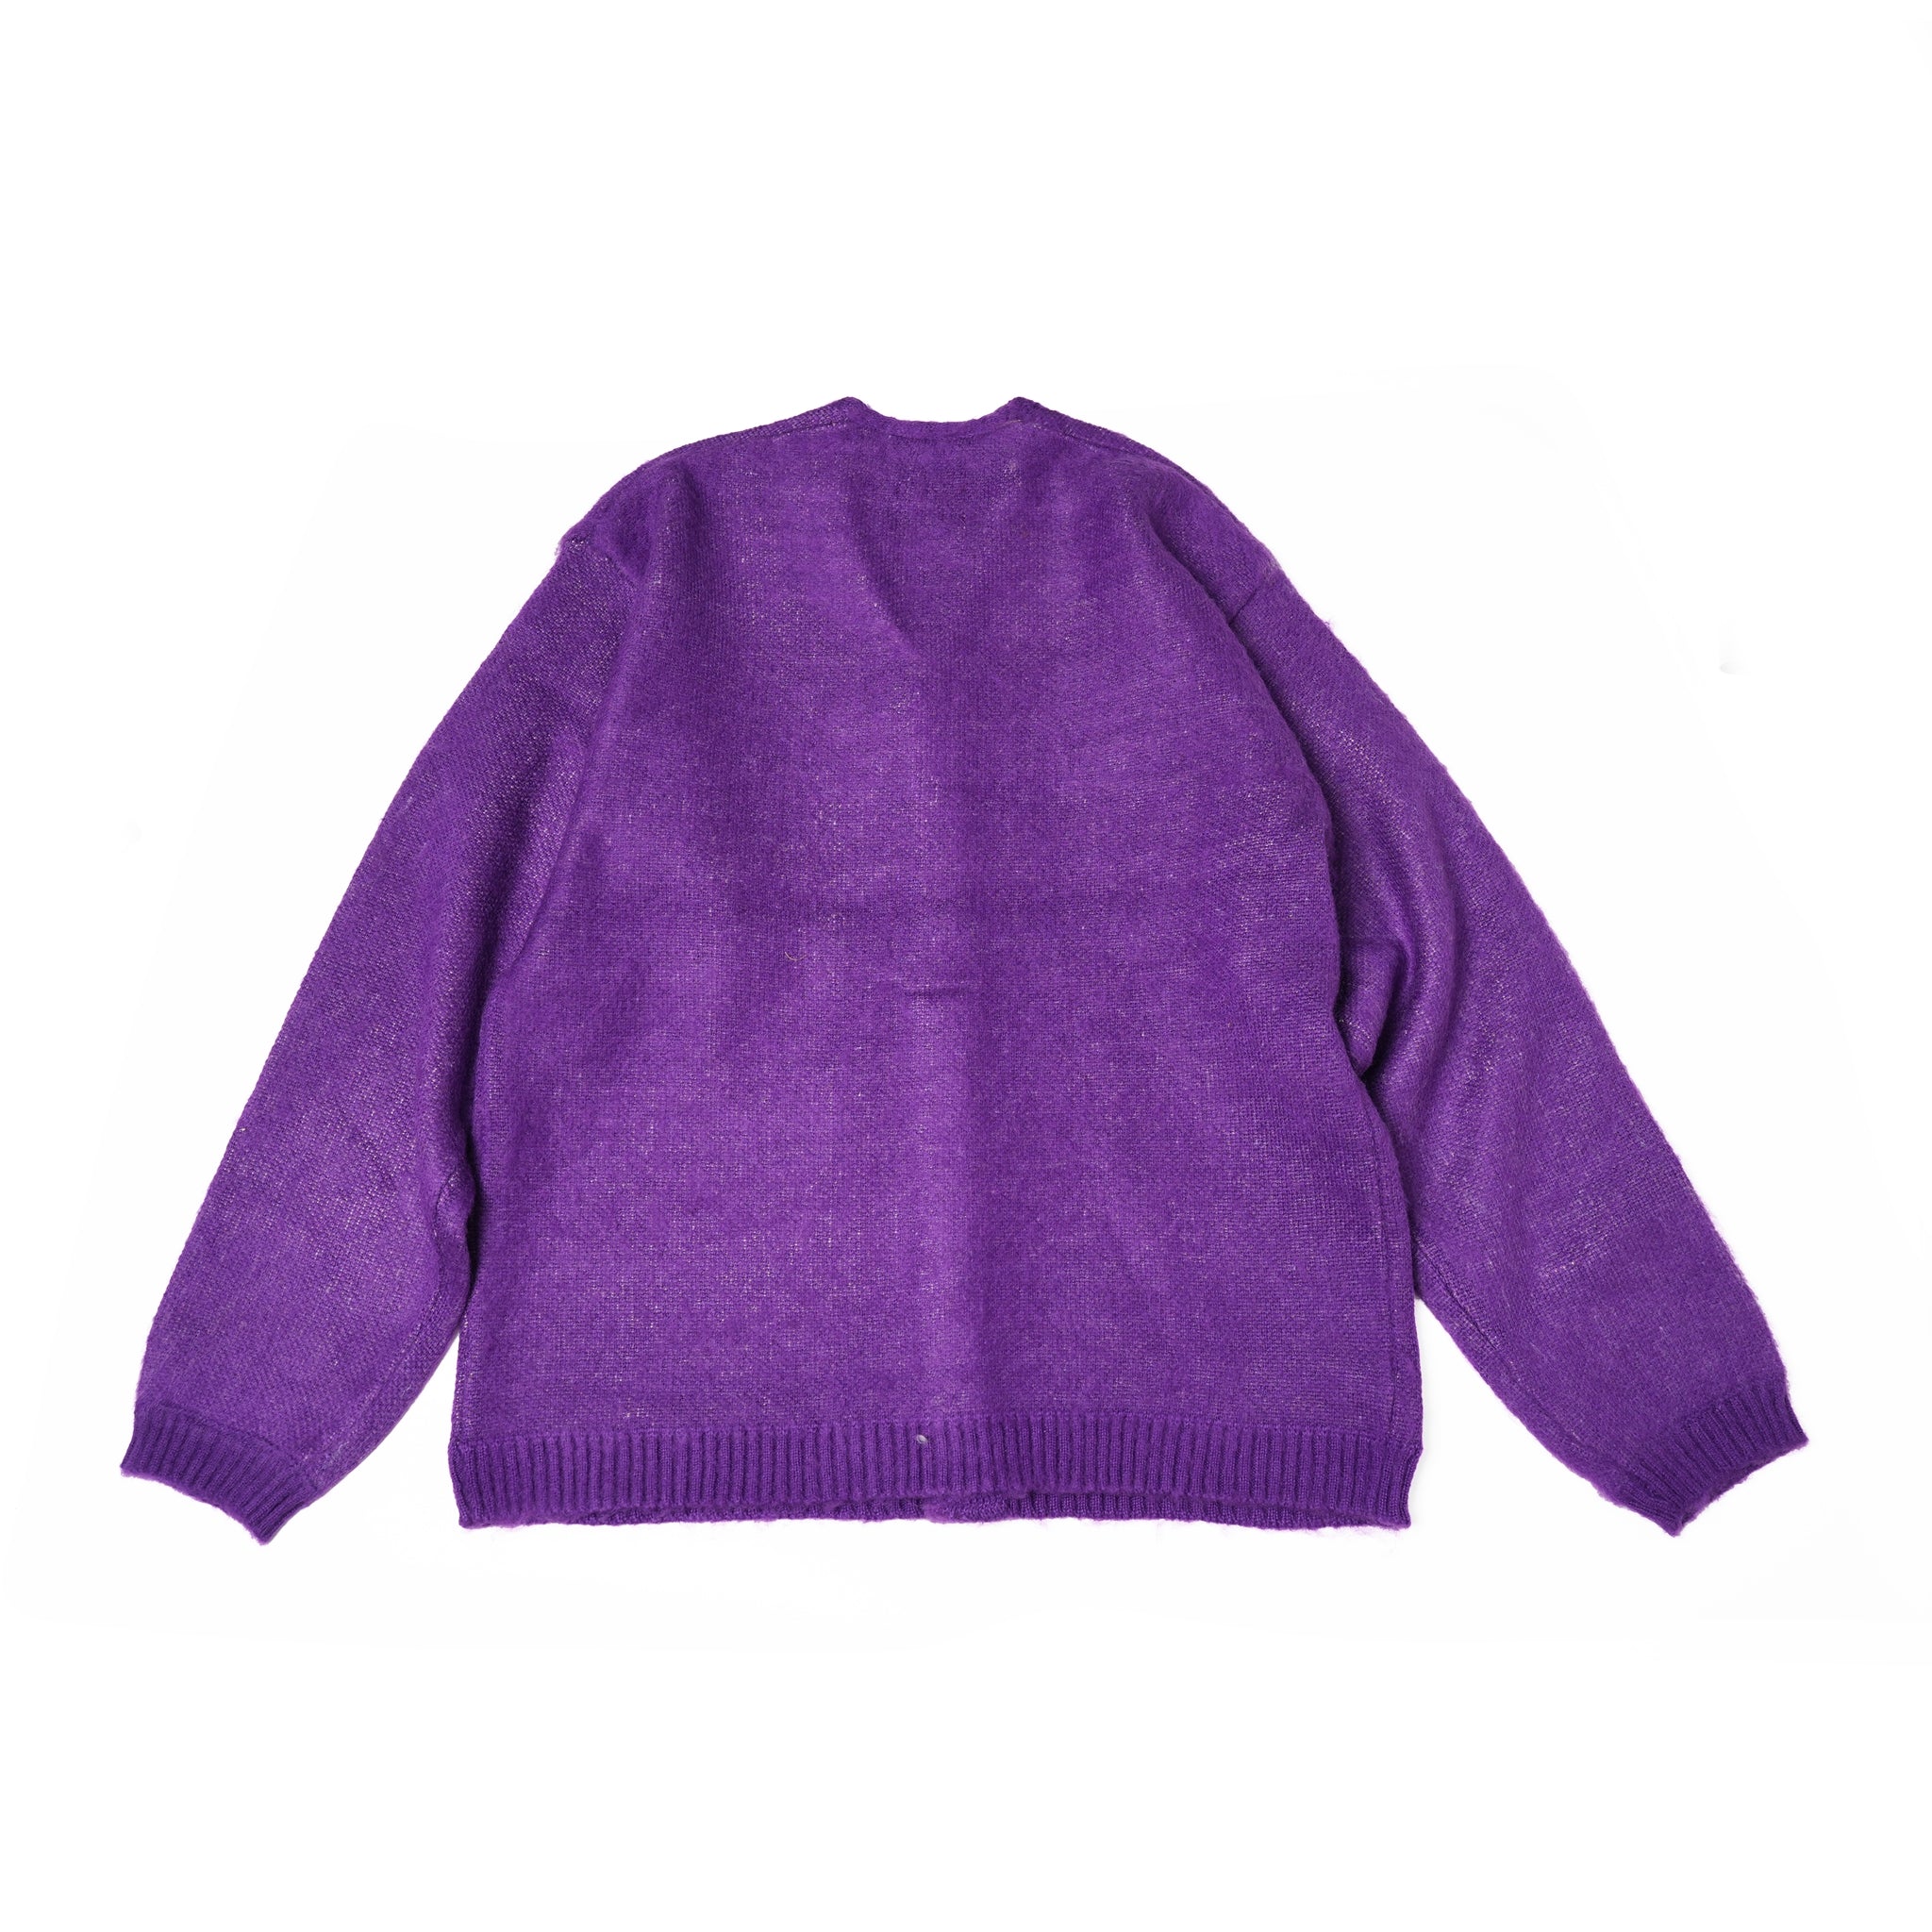 No:tc23f014b | Name:shaggy color cardigan | Color:Purple